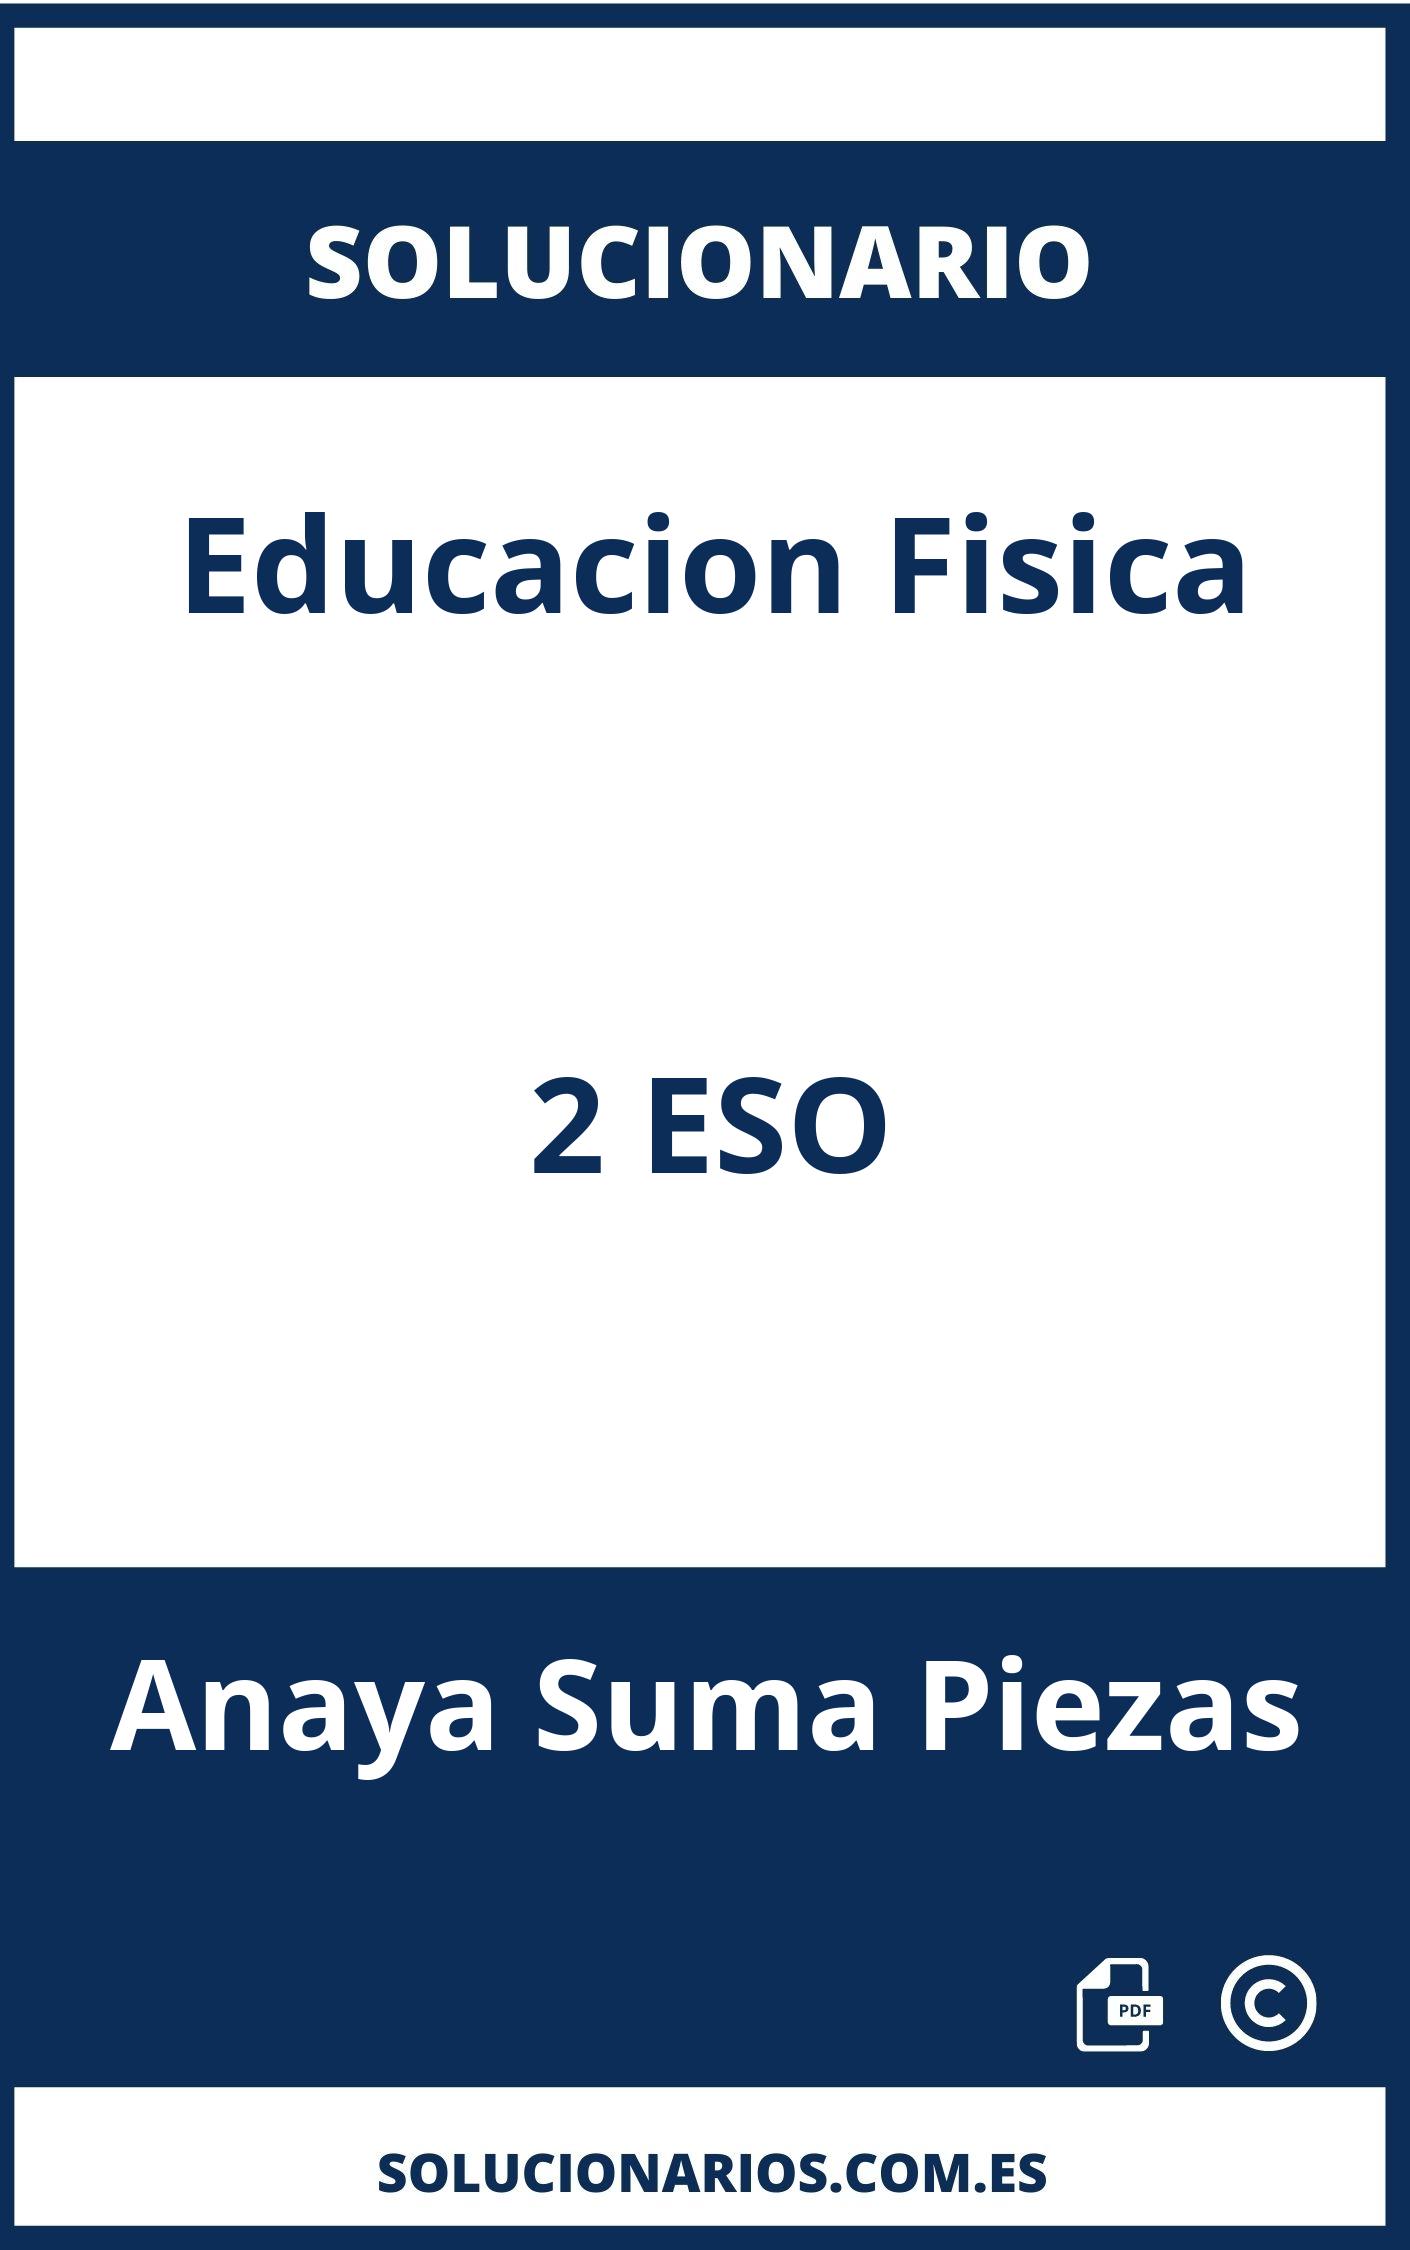 Solucionario De Educacion Fisica 2 Eso Anaya Suma Piezas